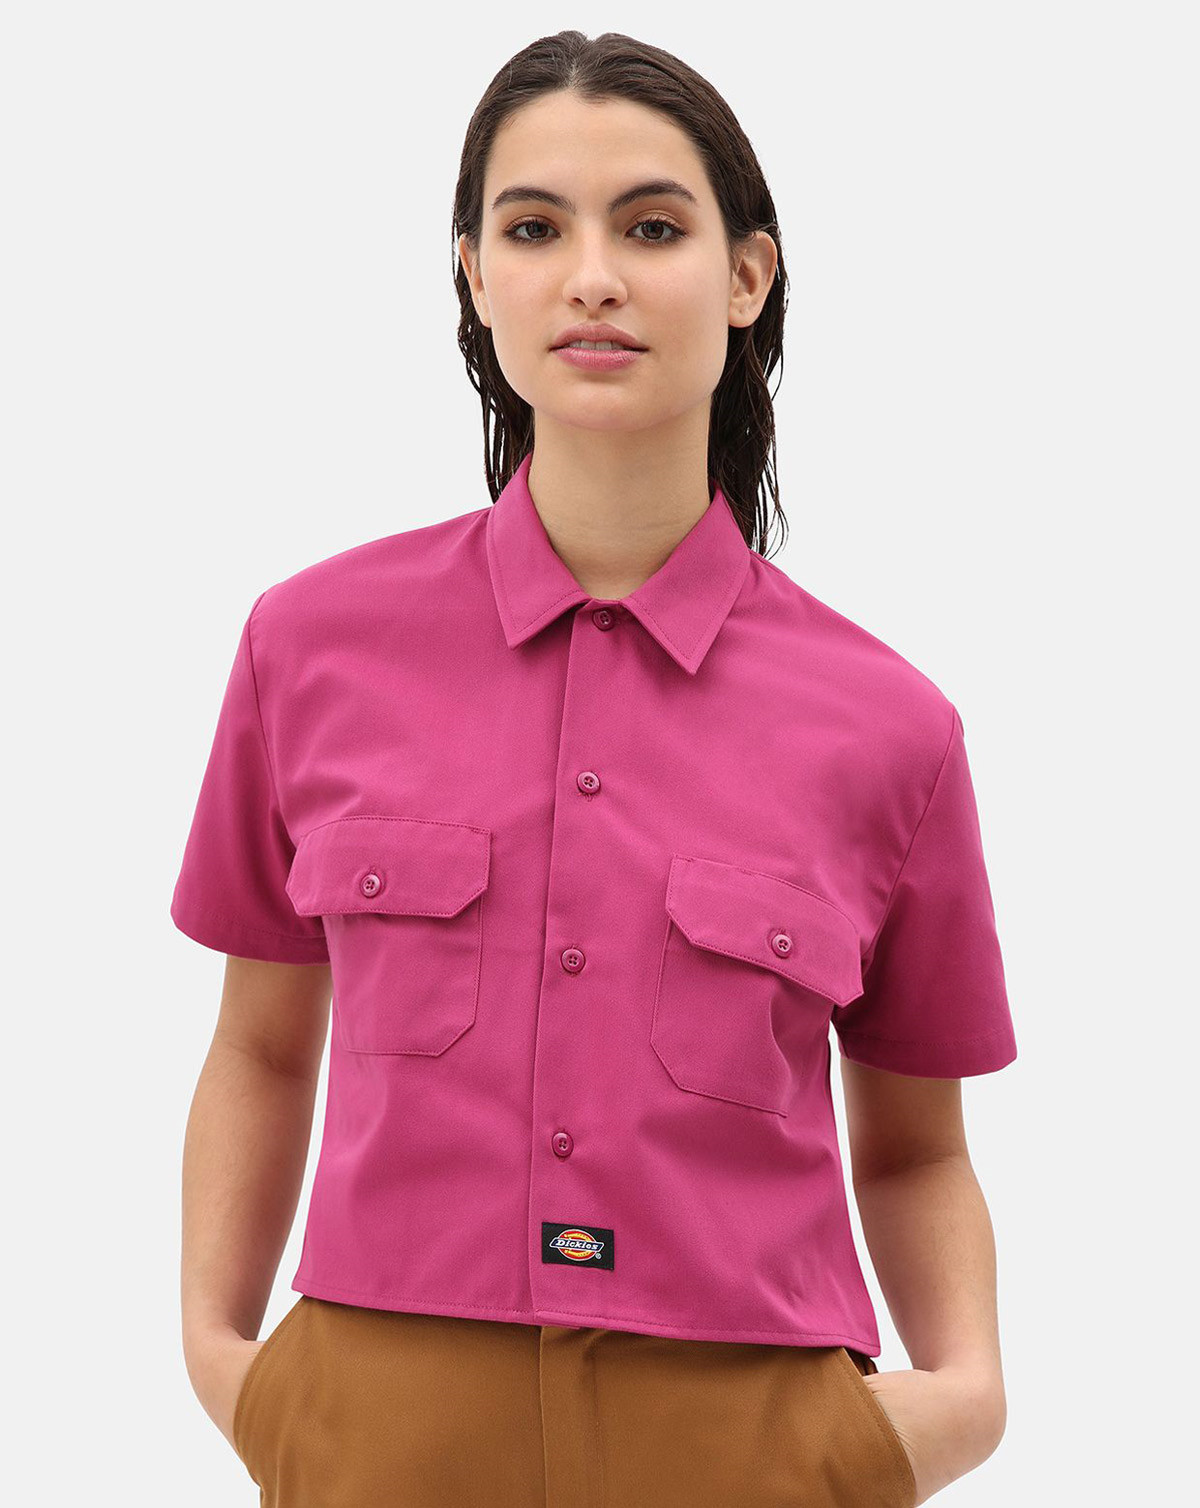 #2 - Dickies Silver Grove Cropped Work Skjorte, Regulær Pasform (Pink berry, XL)